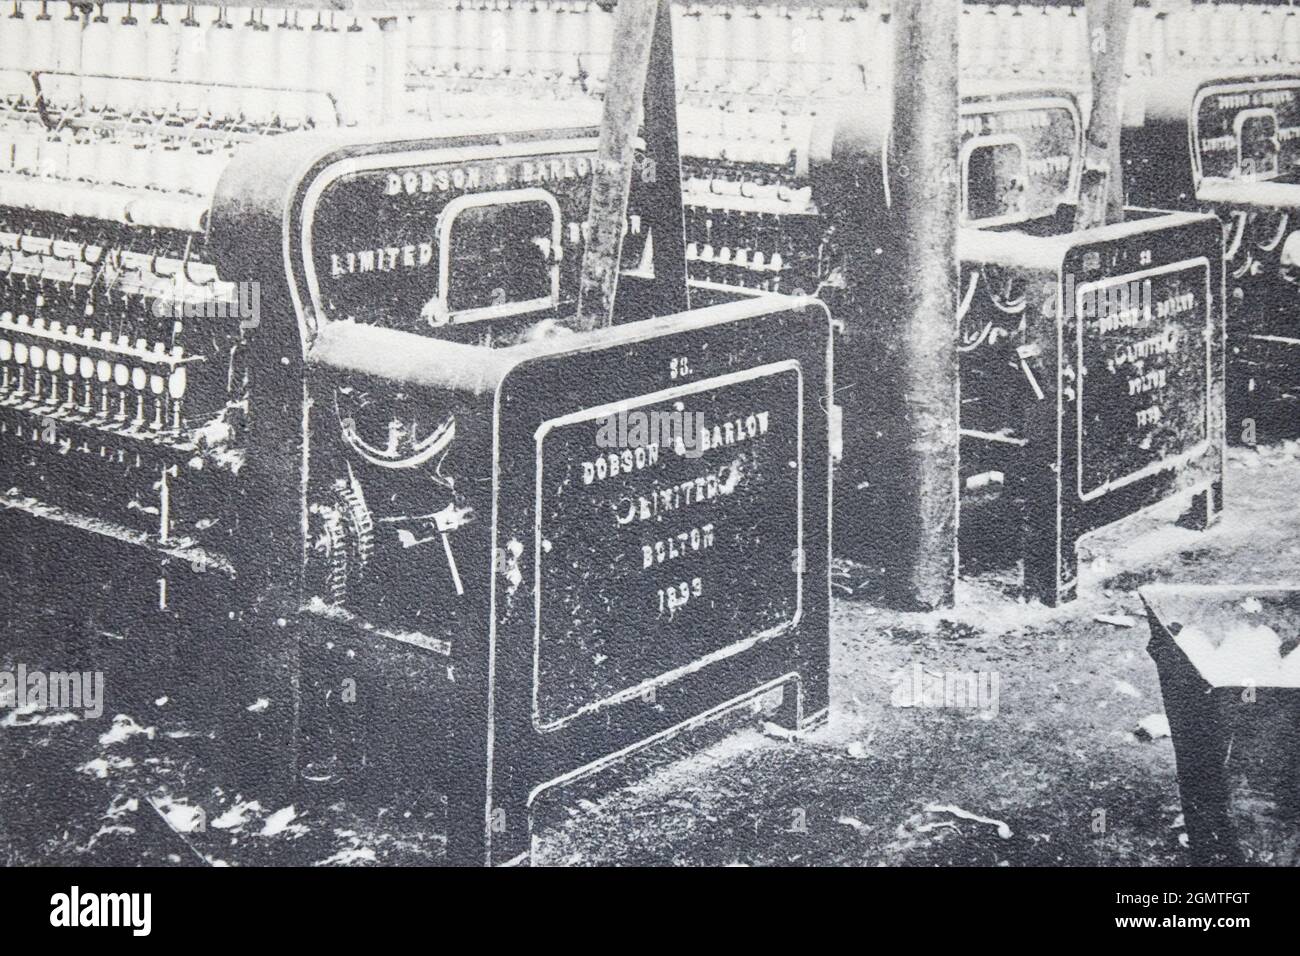 Machines de pompage d'eau Dobson & Barlow dans une usine de traitement des fibres de Transcaucasie en 1902. Banque D'Images